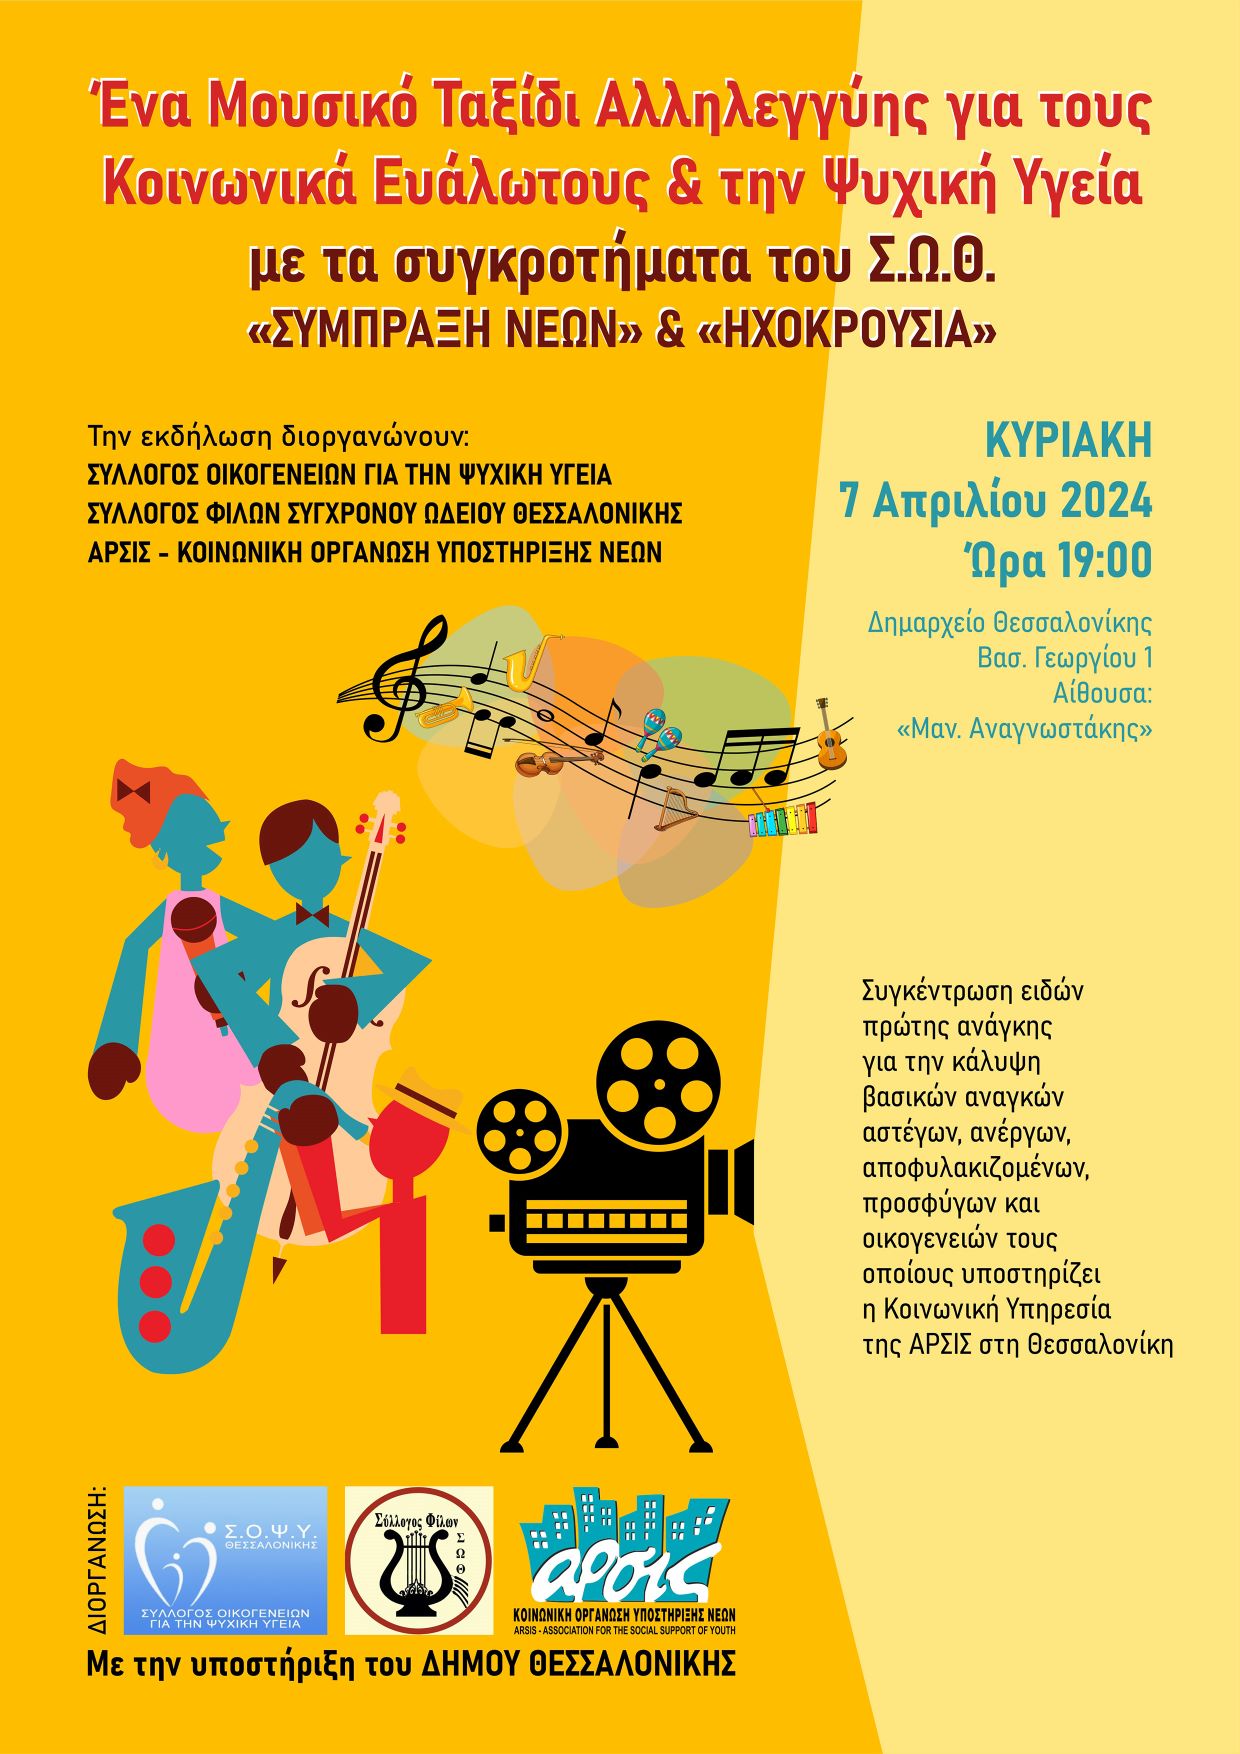 Θεσσαλονίκη: Ένα μουσικό ταξίδι αλληλεγγύης για τους κοινωνικά ευάλωτους και την ψυχική υγεία